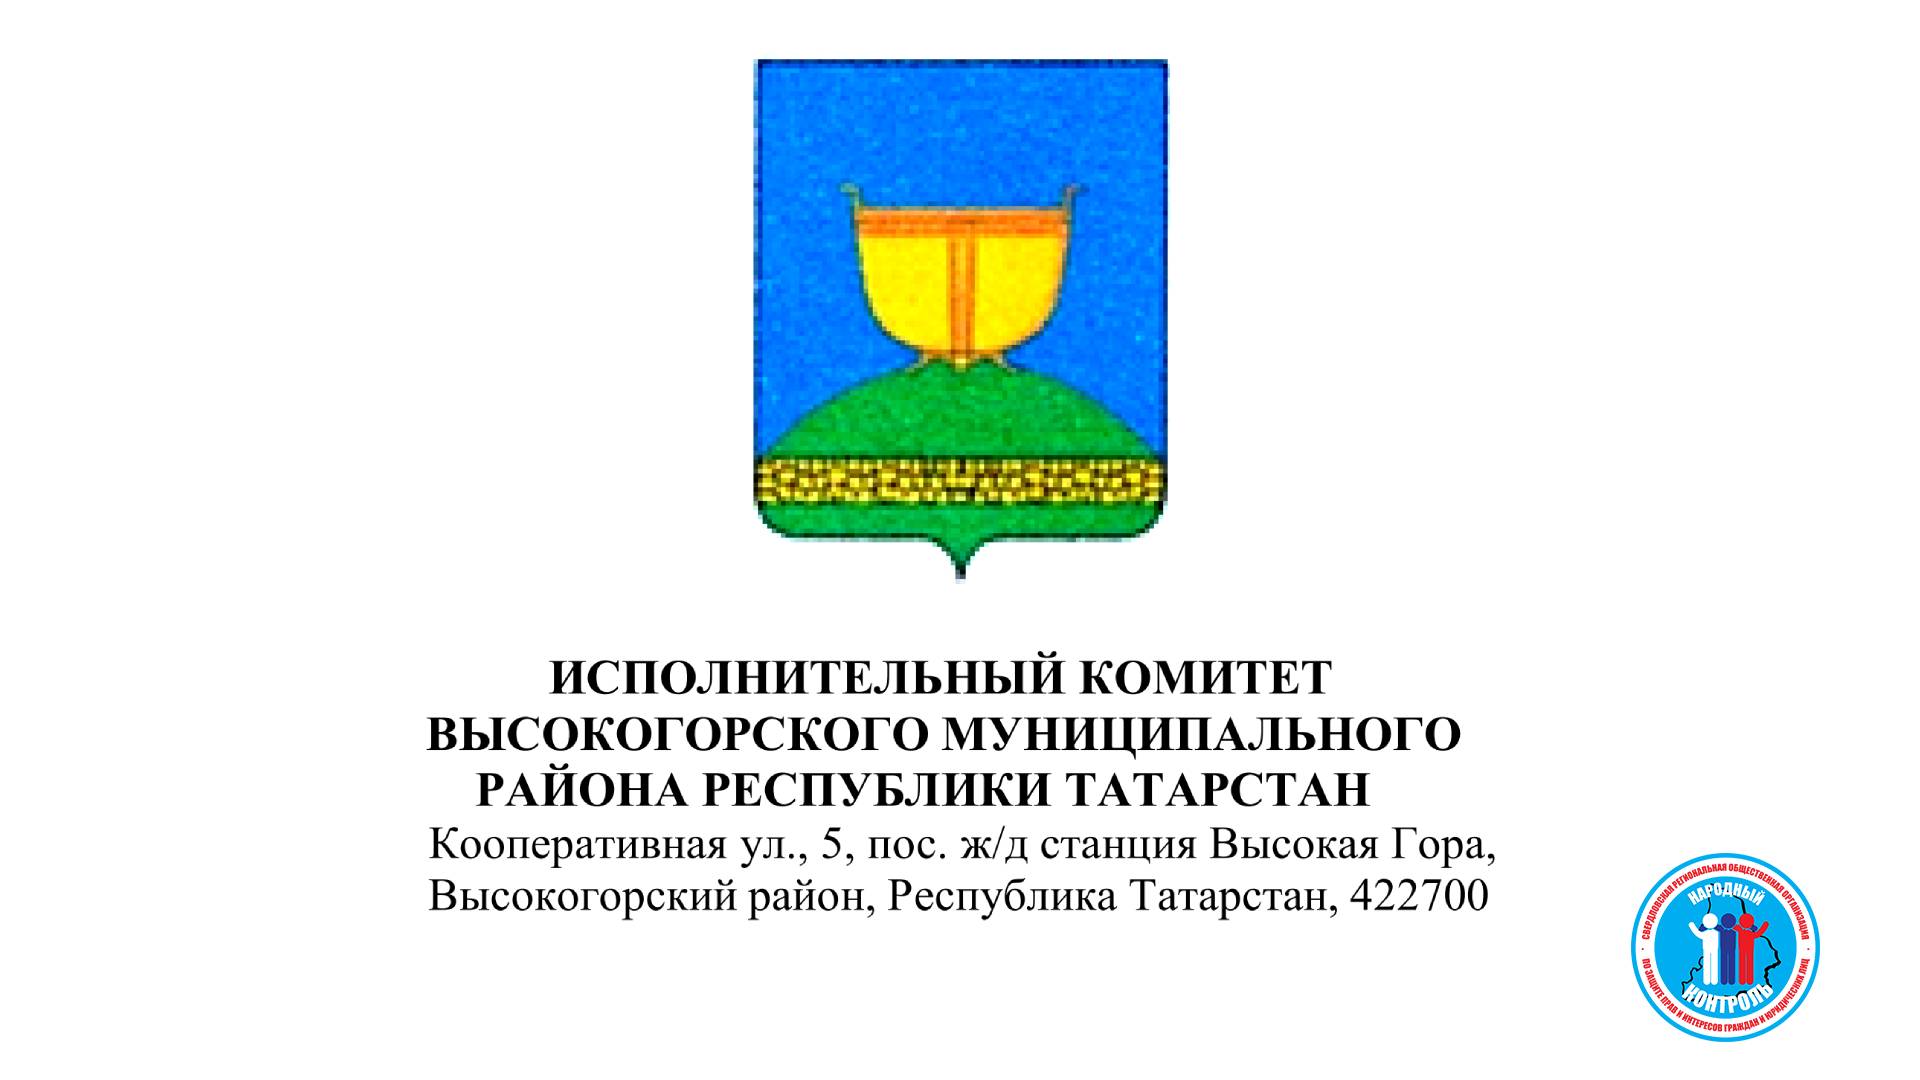 ИК Высокогорского мун р-на Татарстан